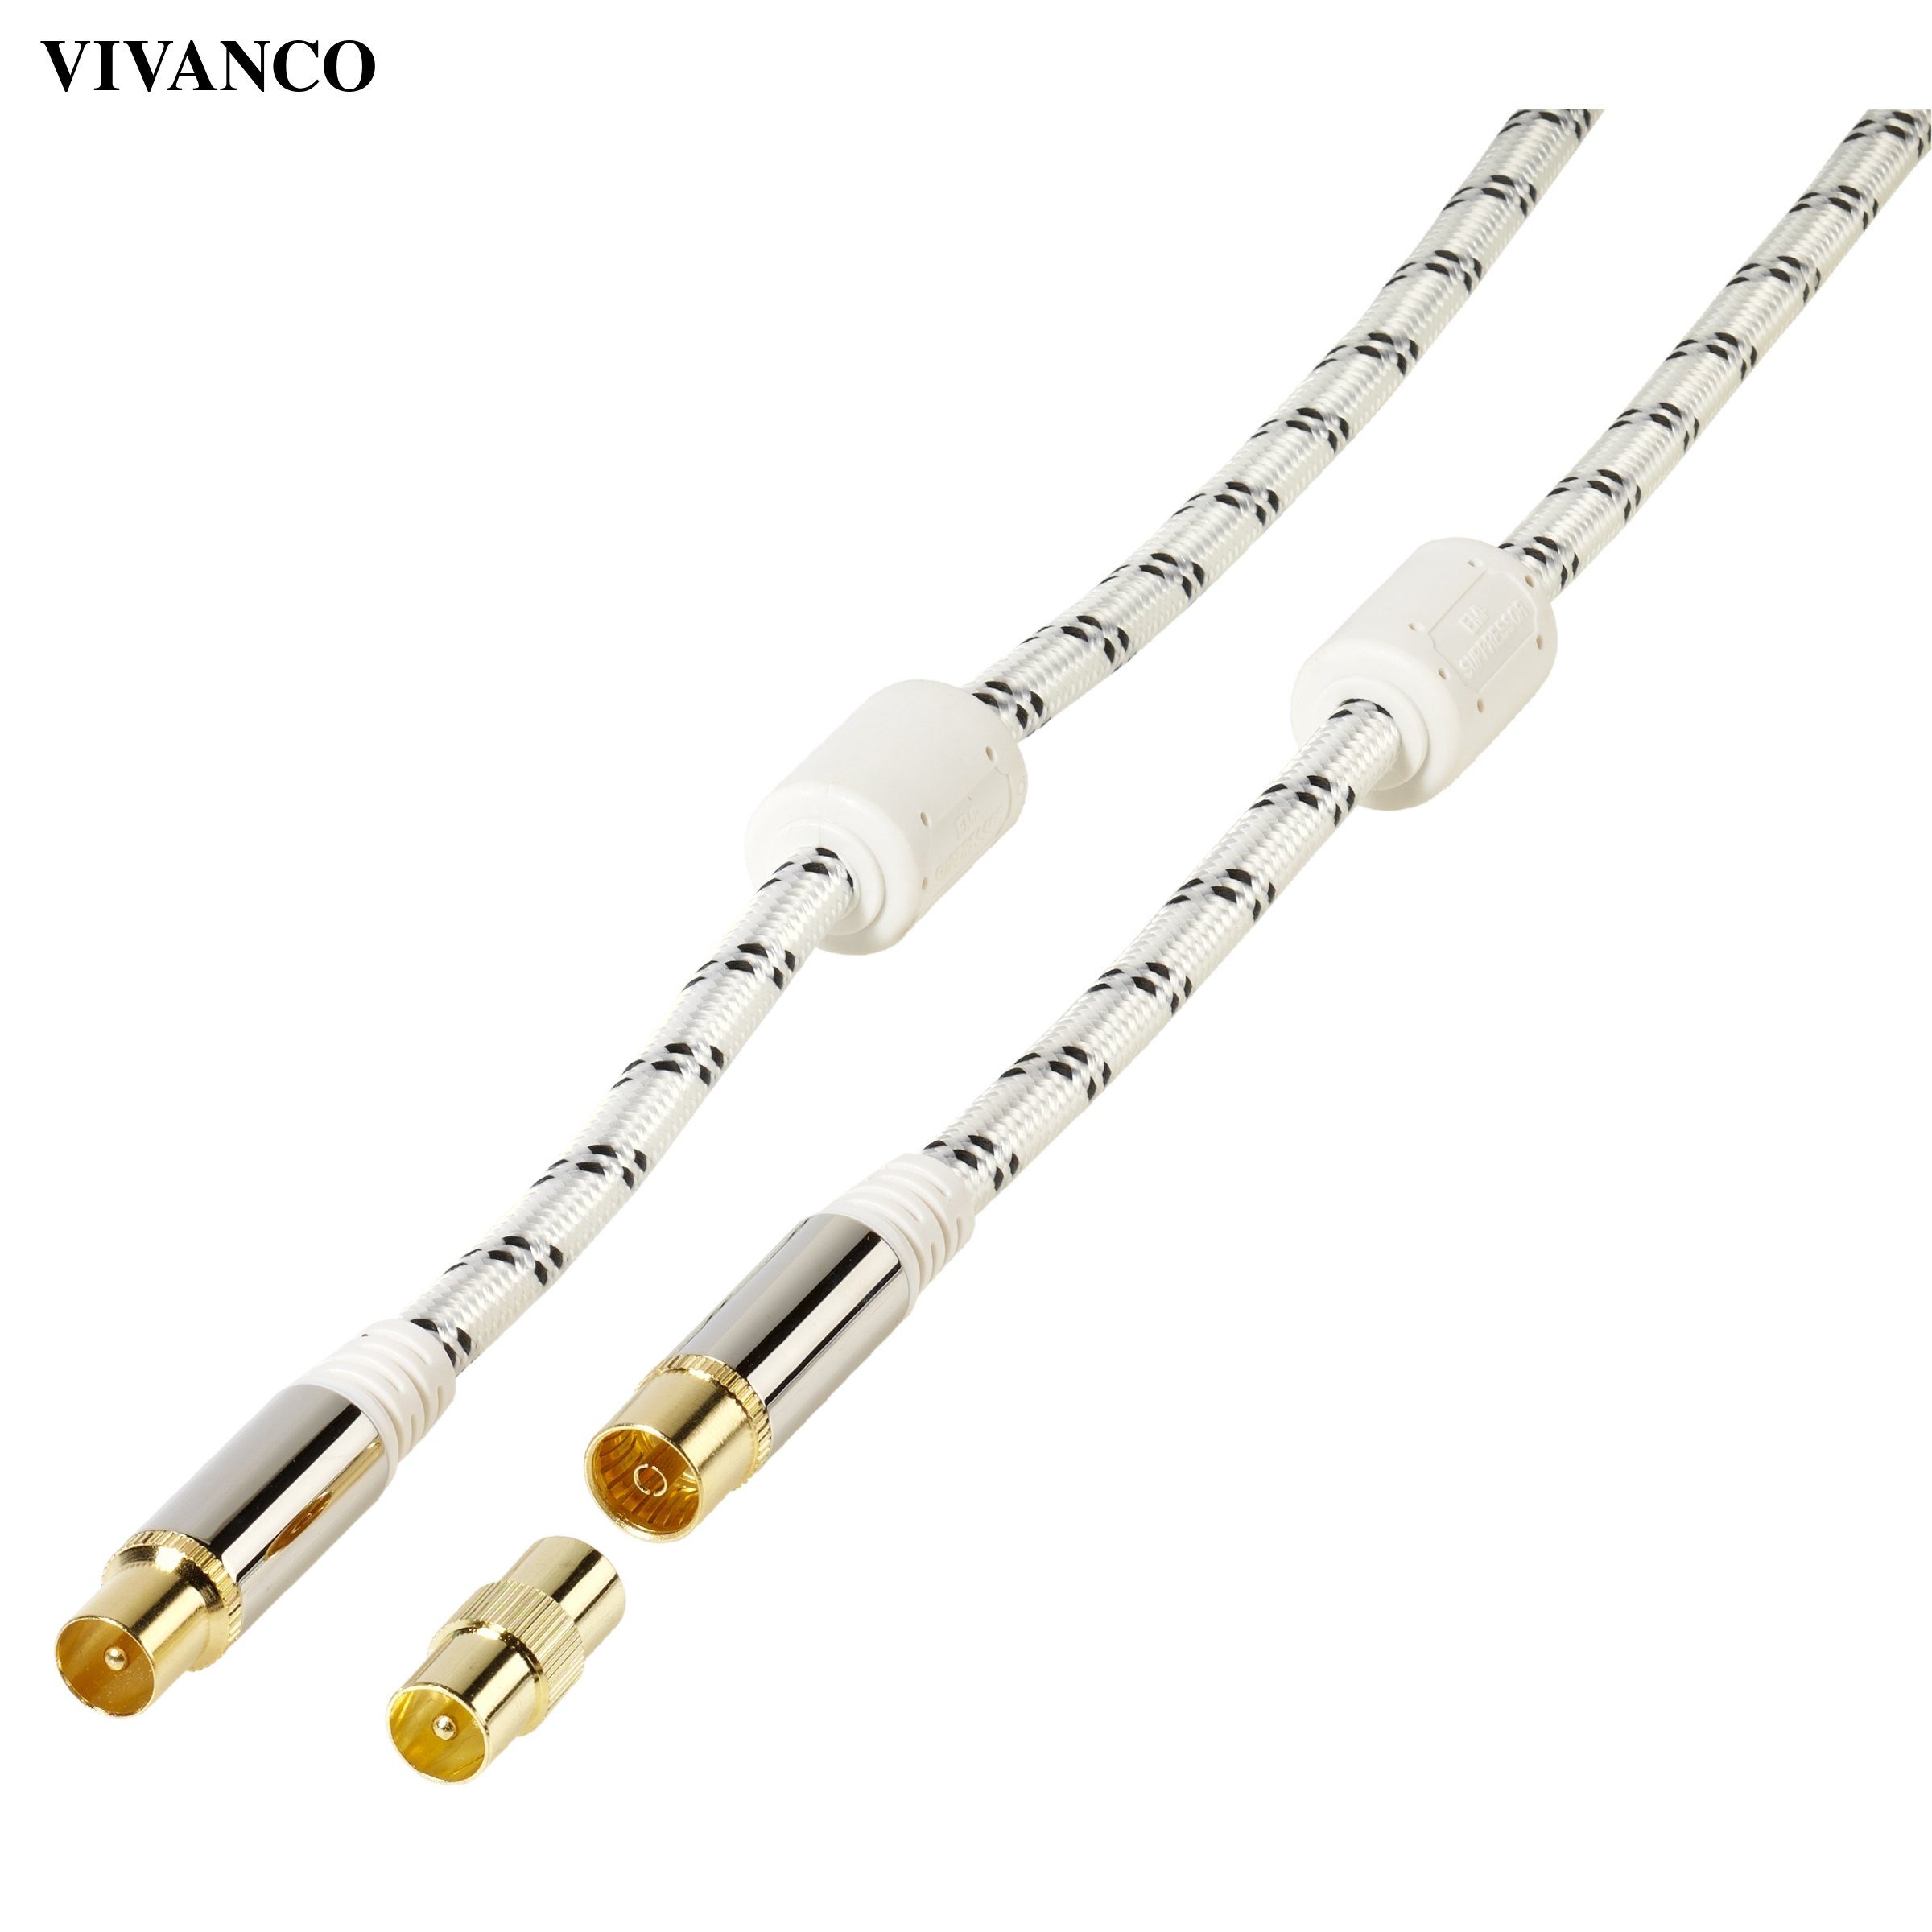 Vivanco Video-Kabel, Antennenkabel, vergoldet, 120dB | SAT-Kabel